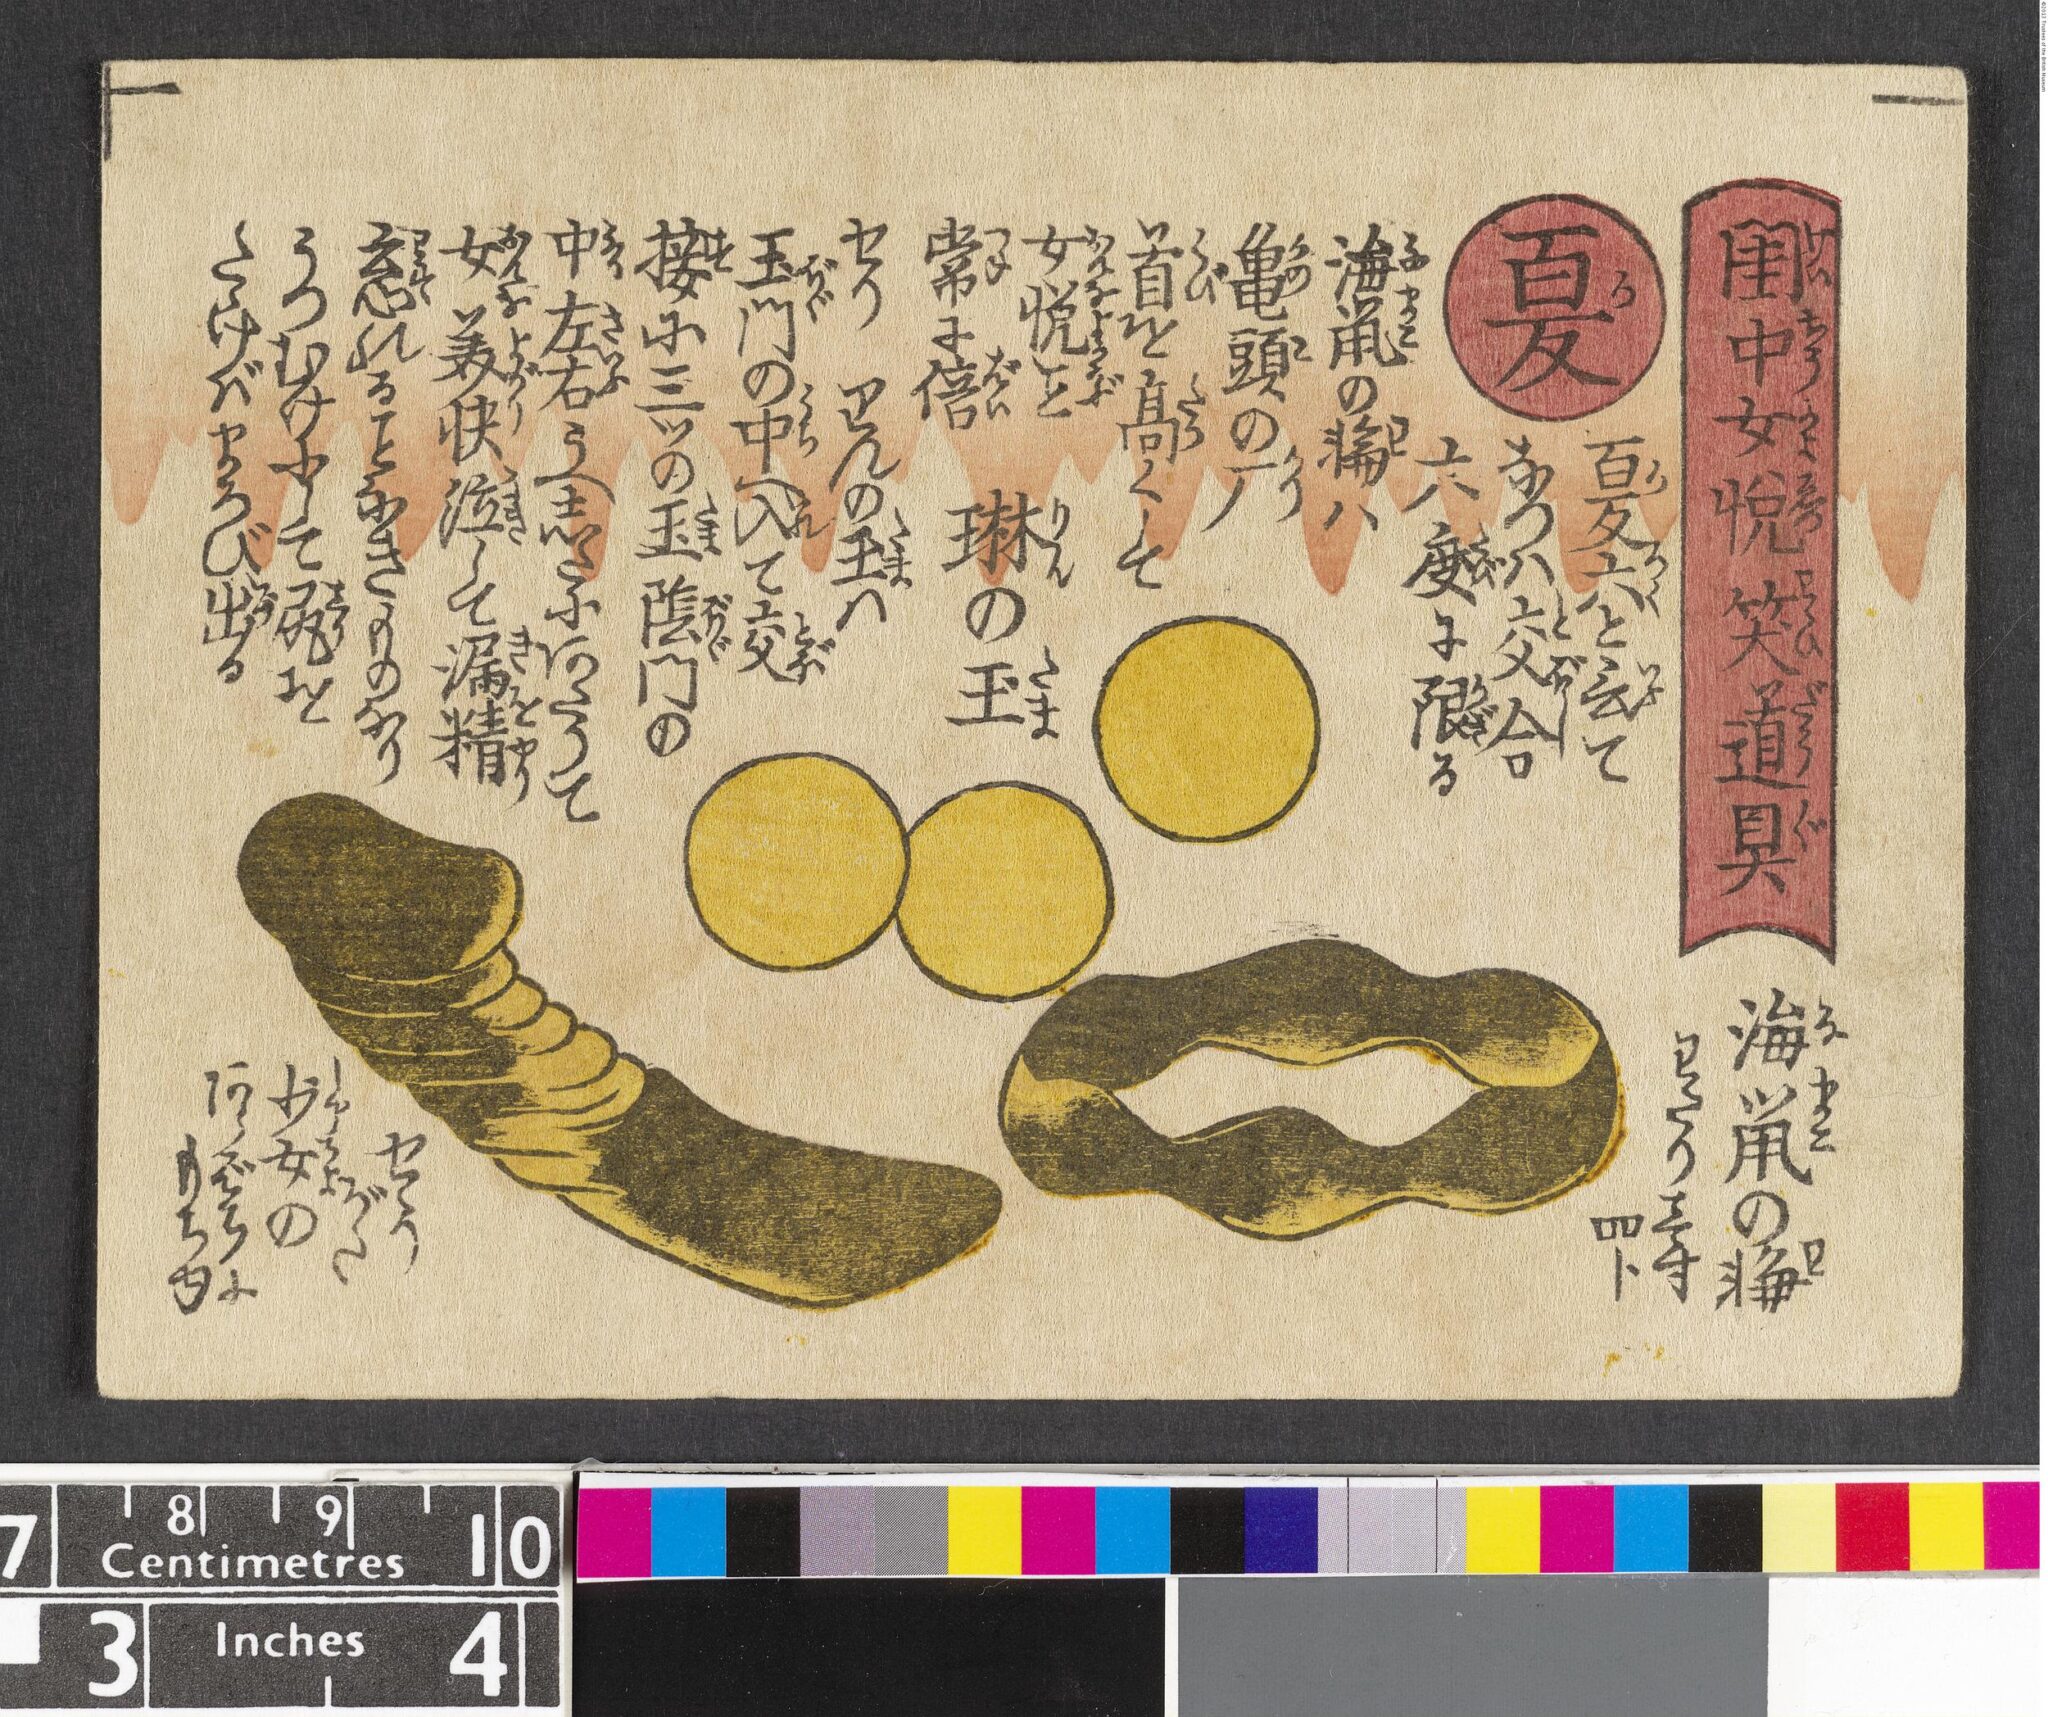 Shunga Woodblock print accredited to Keisei Eisen from The British Museum